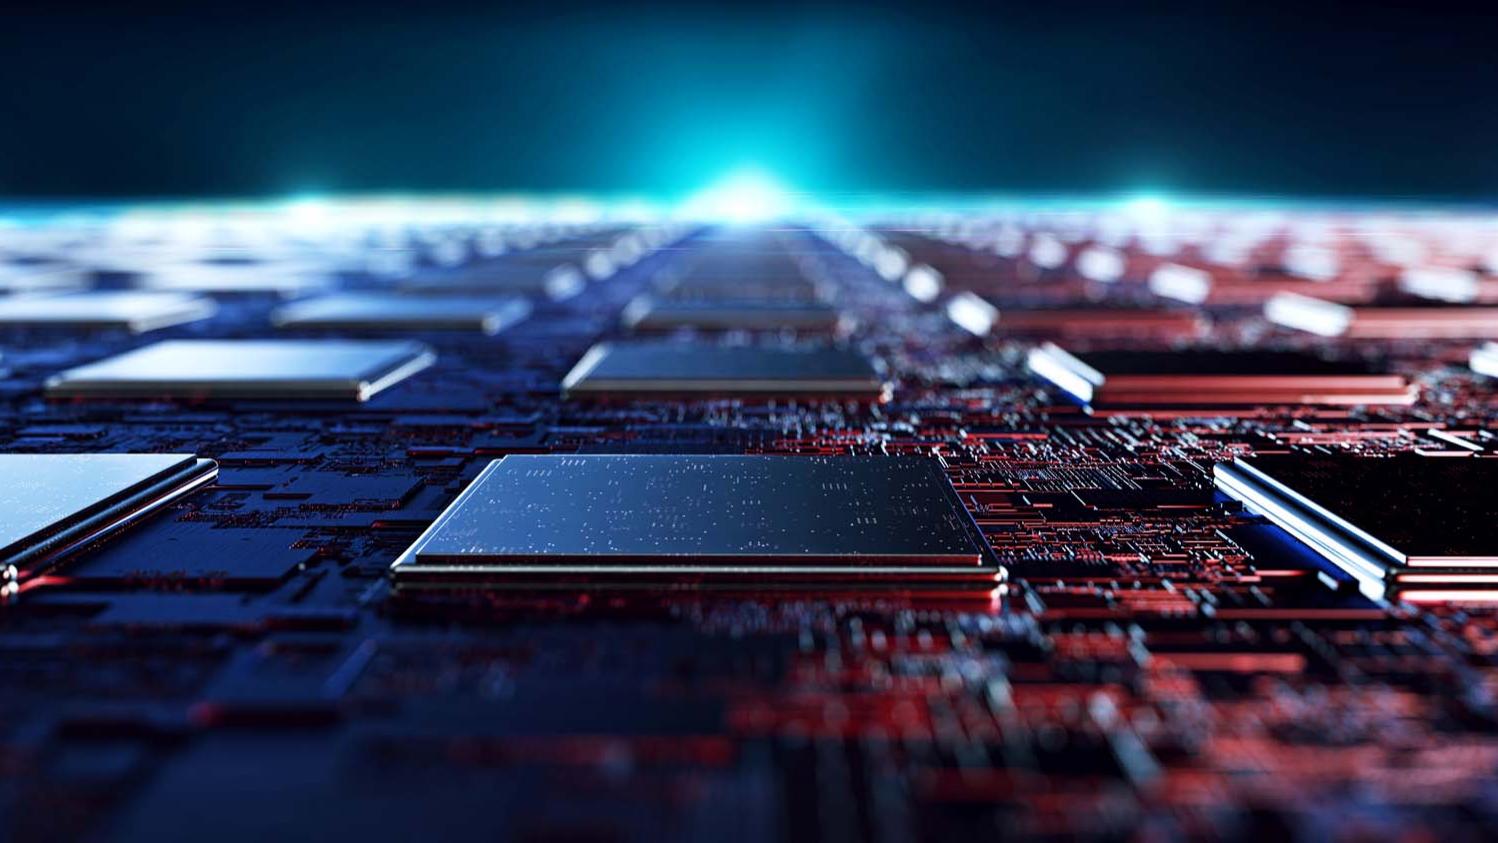 Mikrochips ermöglichen modernste digitale Technologien